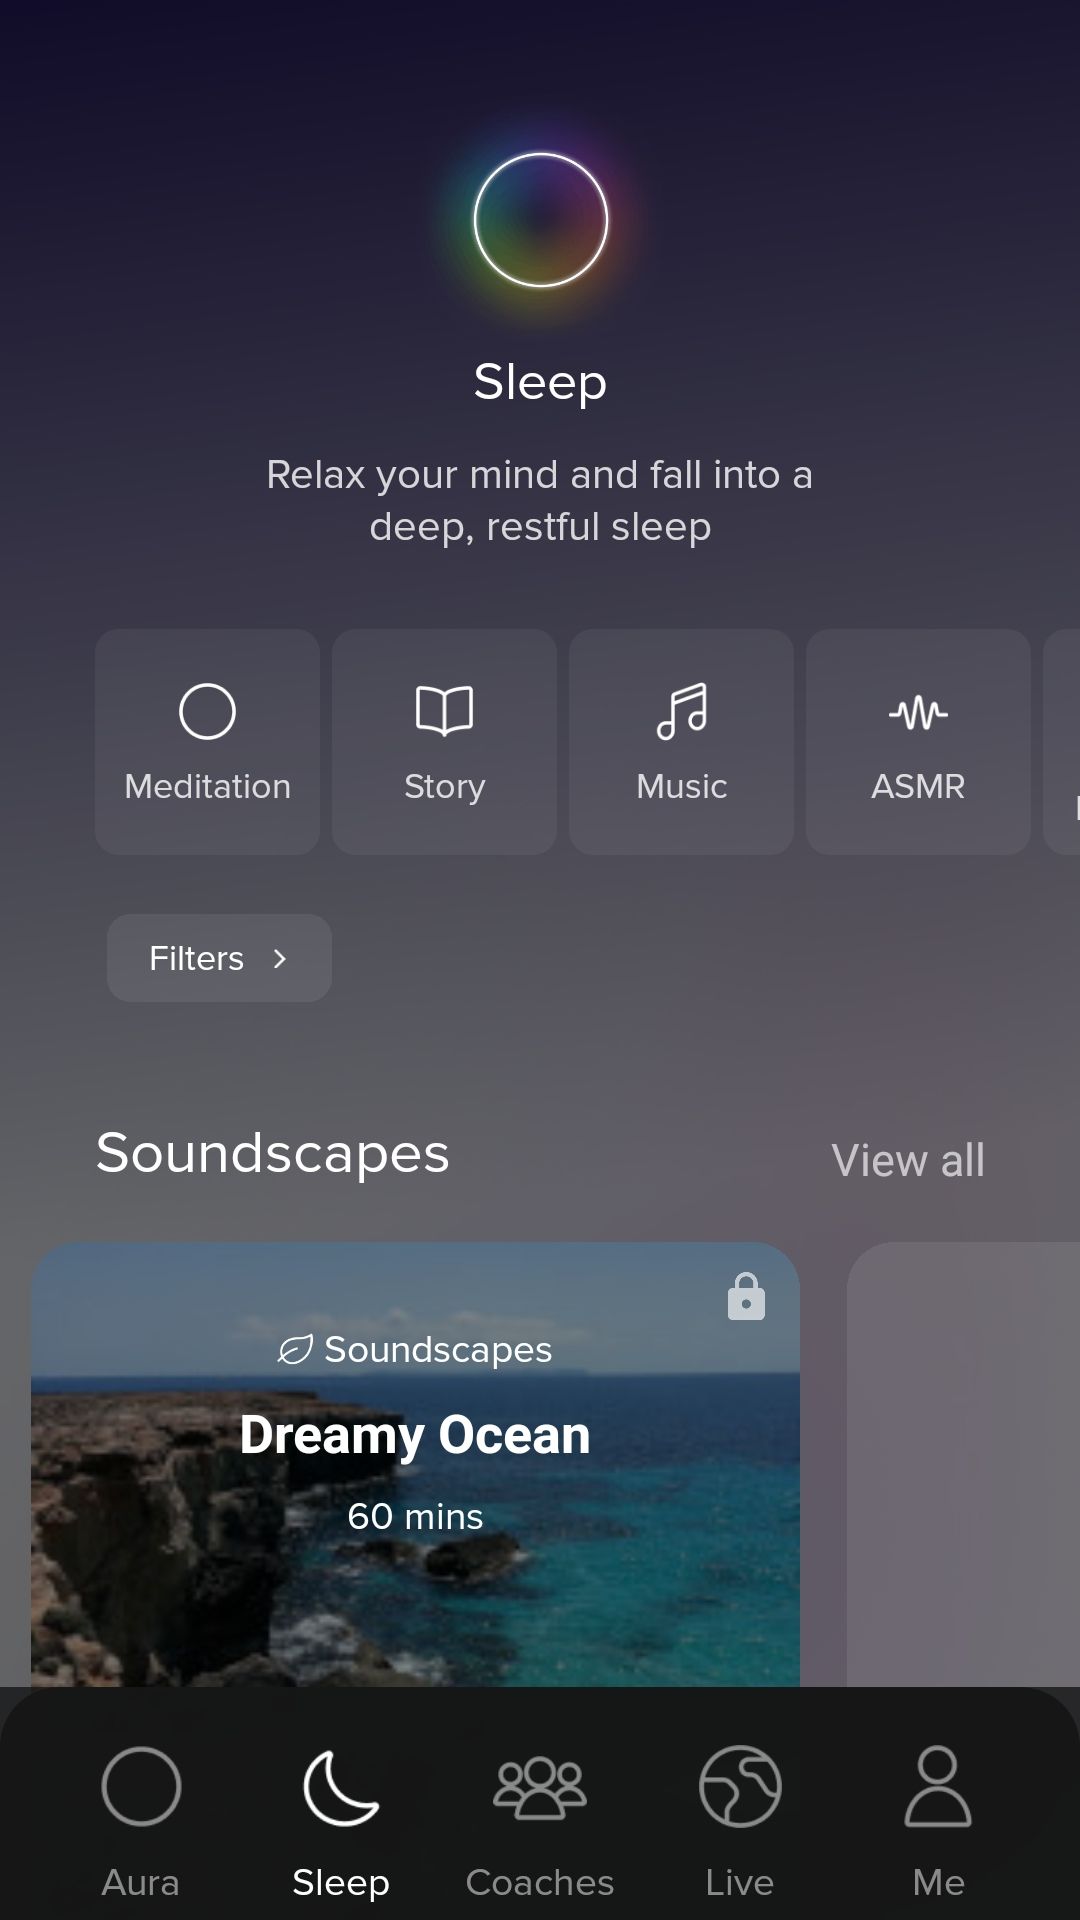 Aura sleep meditation app soundscapes